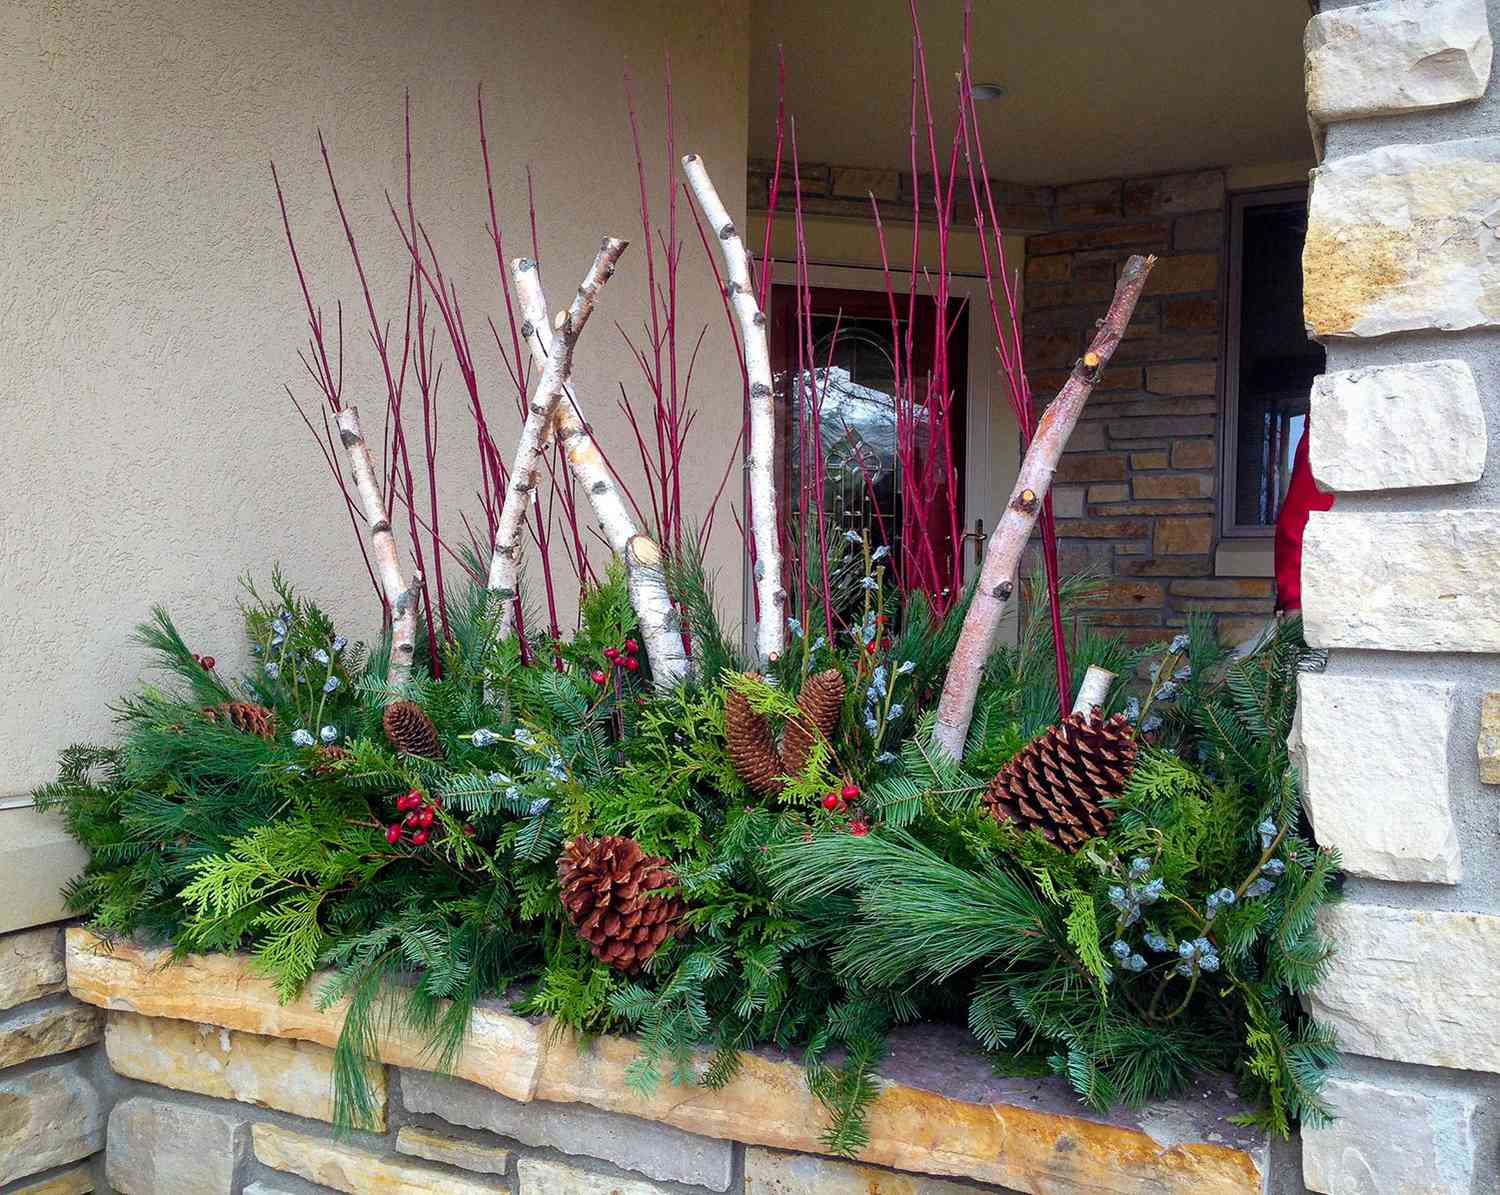 Winterlicher Blumenkasten mit Tannenzapfen, roten Zweigen, Birkenzweigen und Grünzeug